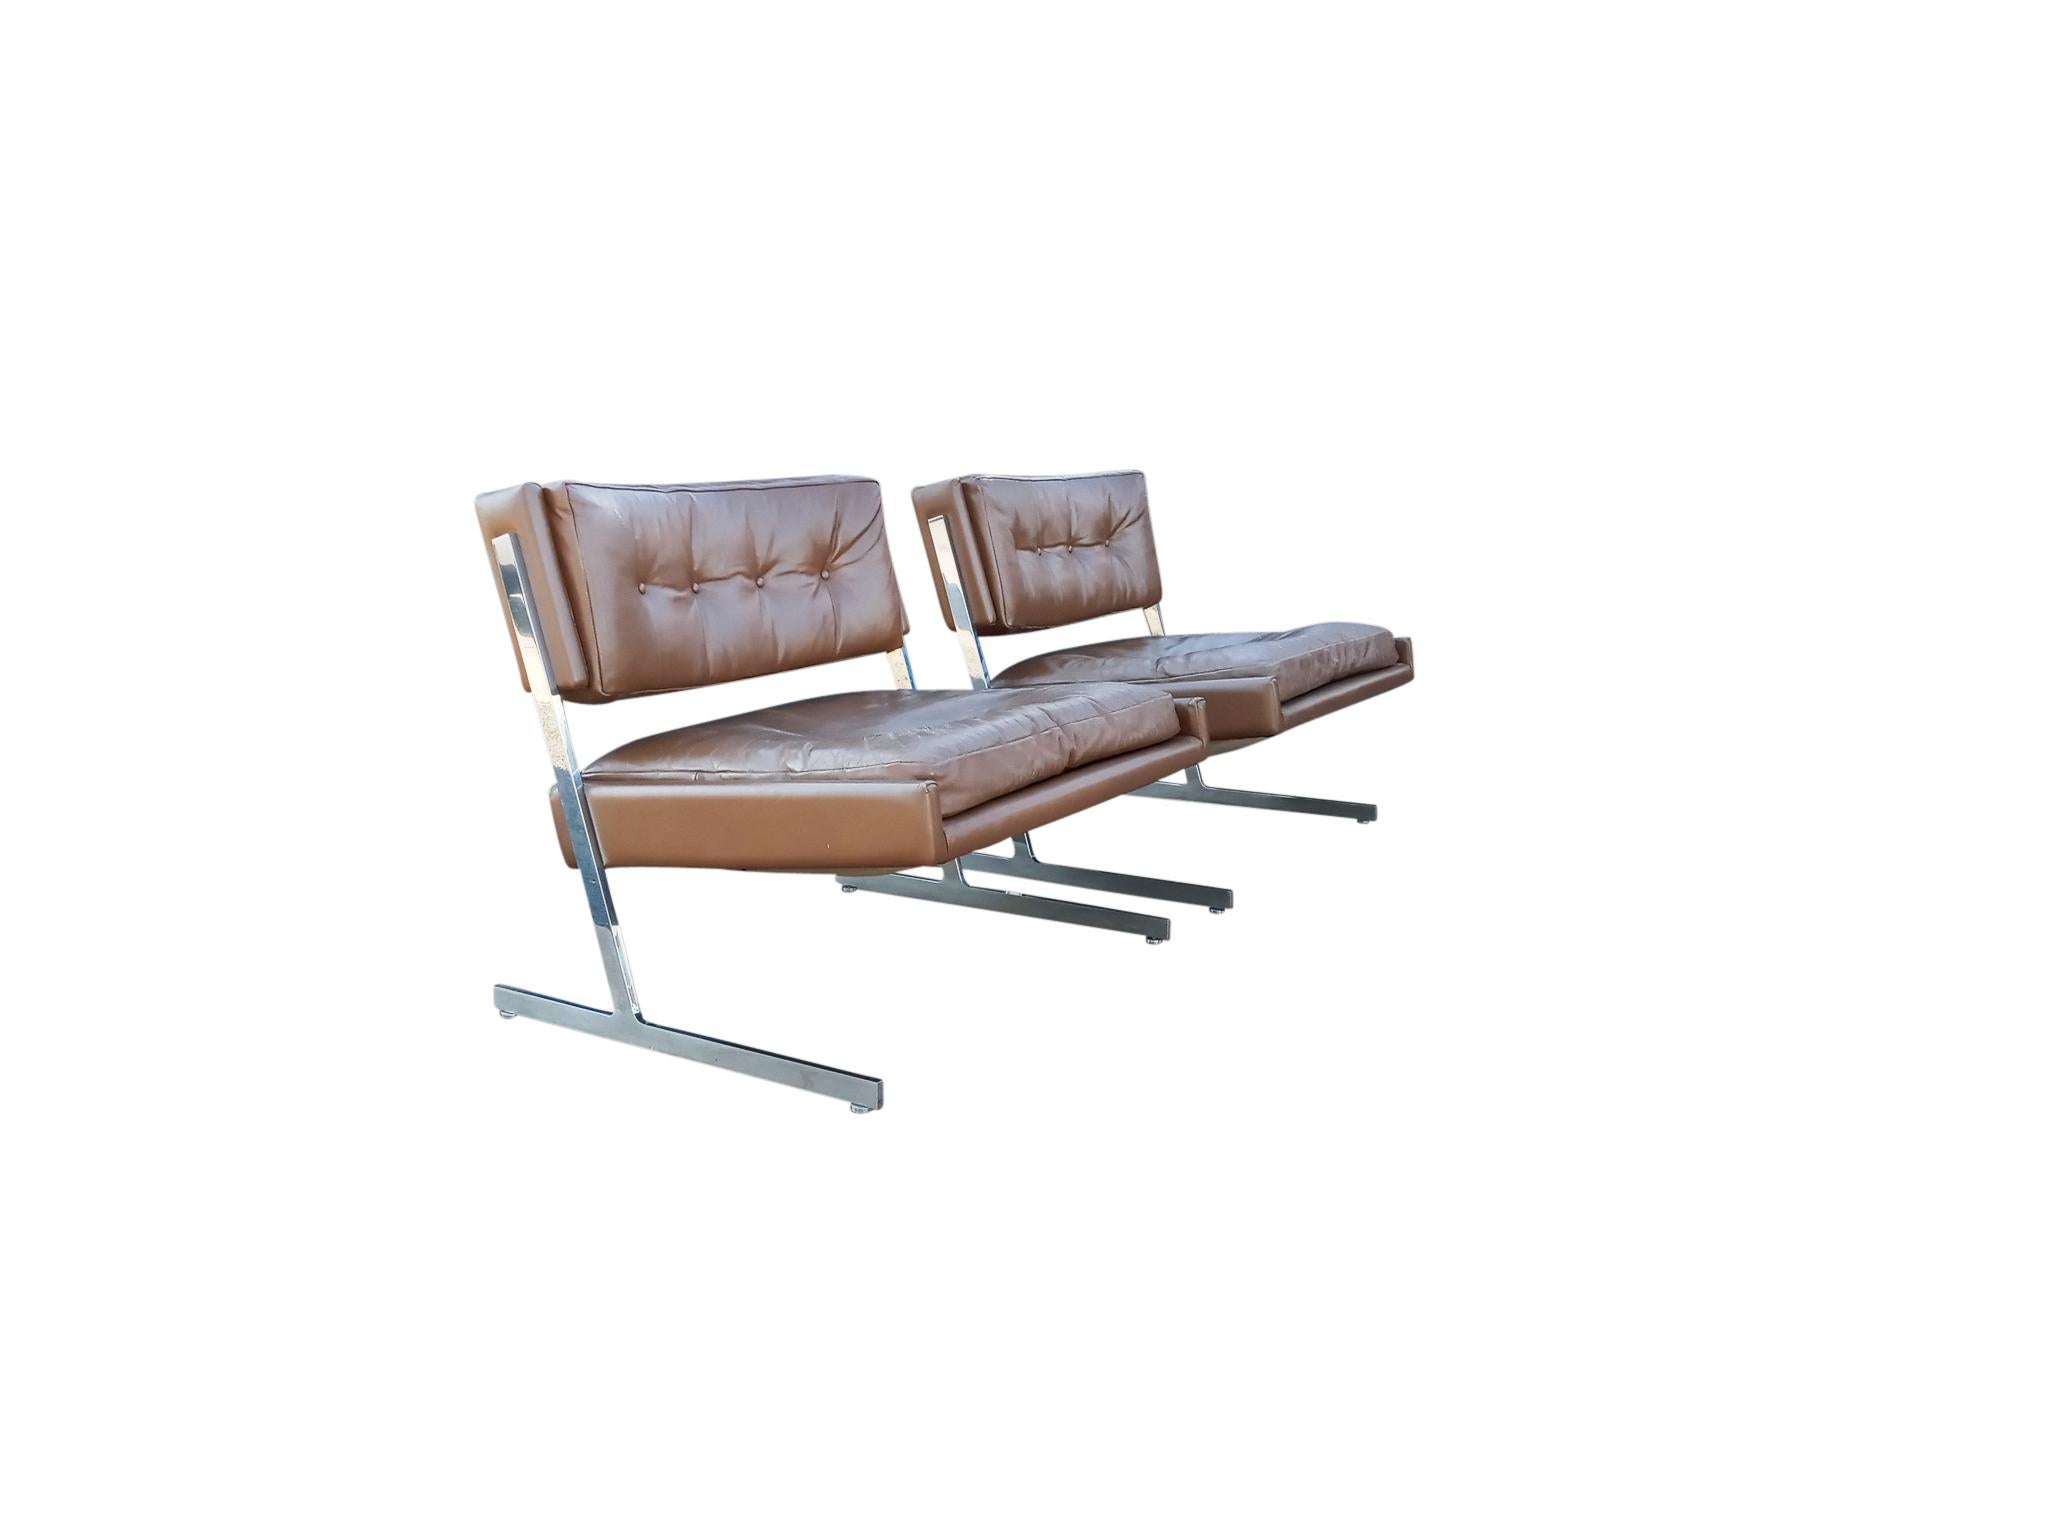 Dieses elegante Paar Probber Lounge Chairs hat ein dynamisches Profil, das durch die Verwendung einer freitragenden Sitzfläche erreicht wird, die von einem Gestell aus poliertem Edelstahl getragen wird. Das schokoladenbraune Origina-Leder ist mit